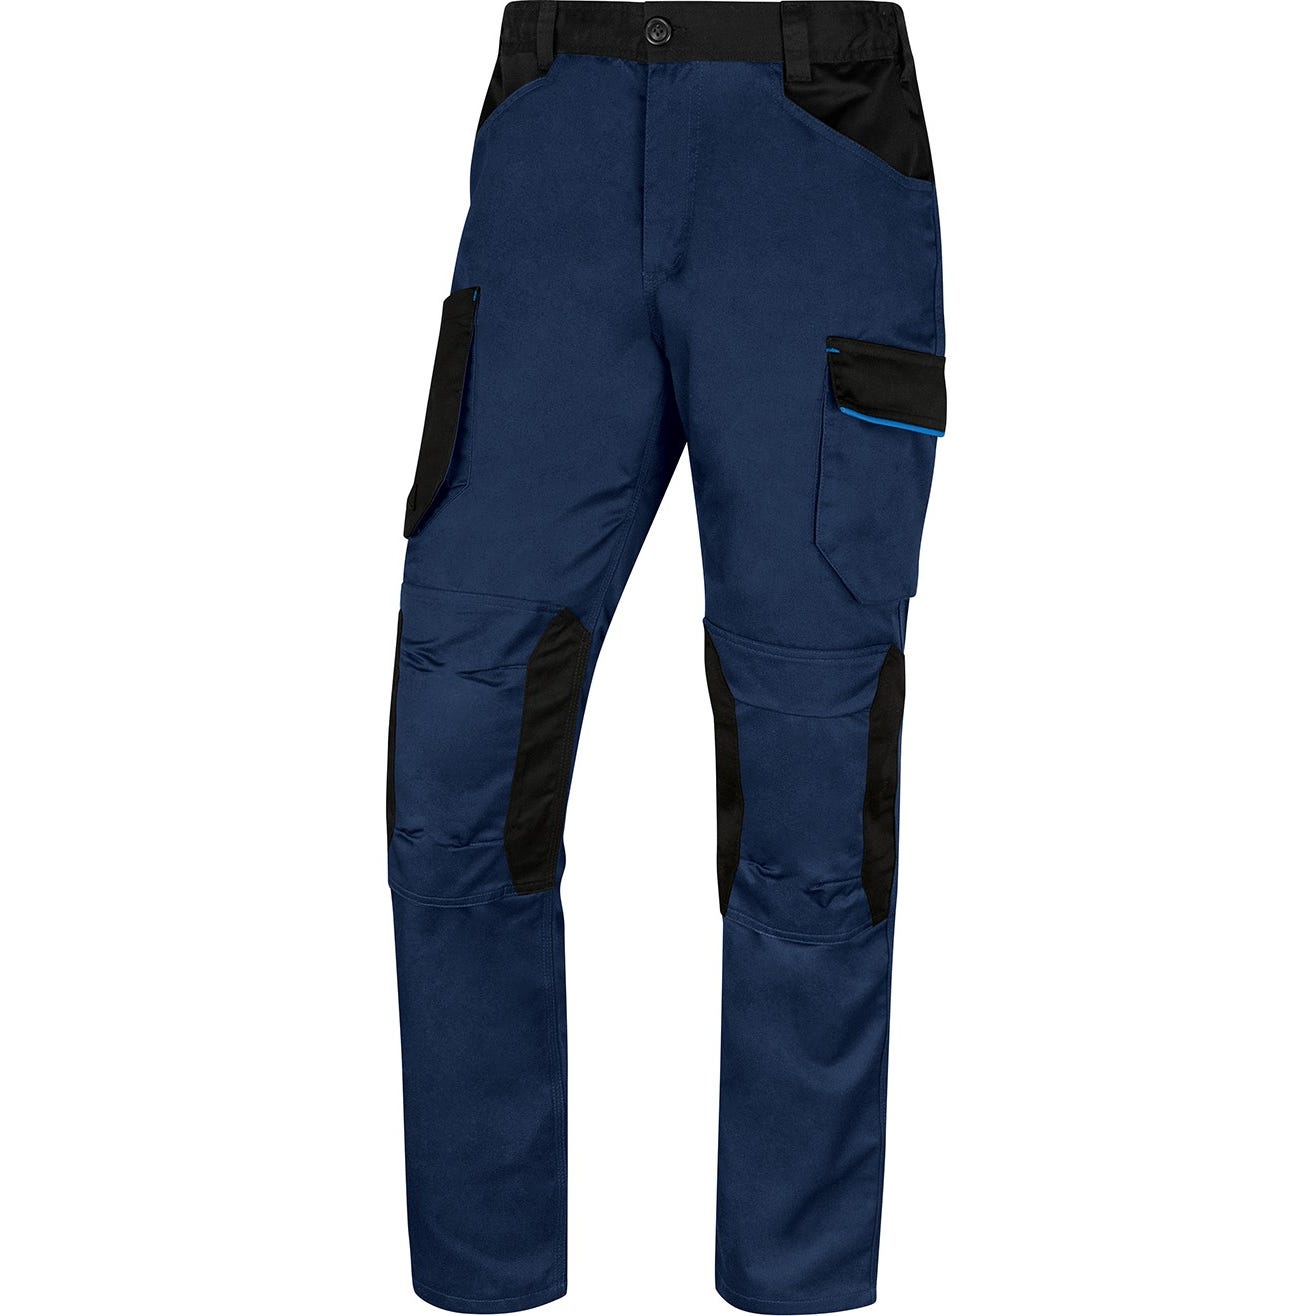 Pantalon de travail mach2 Marine poly / coton - Delta Plus - Taille 3XL 3